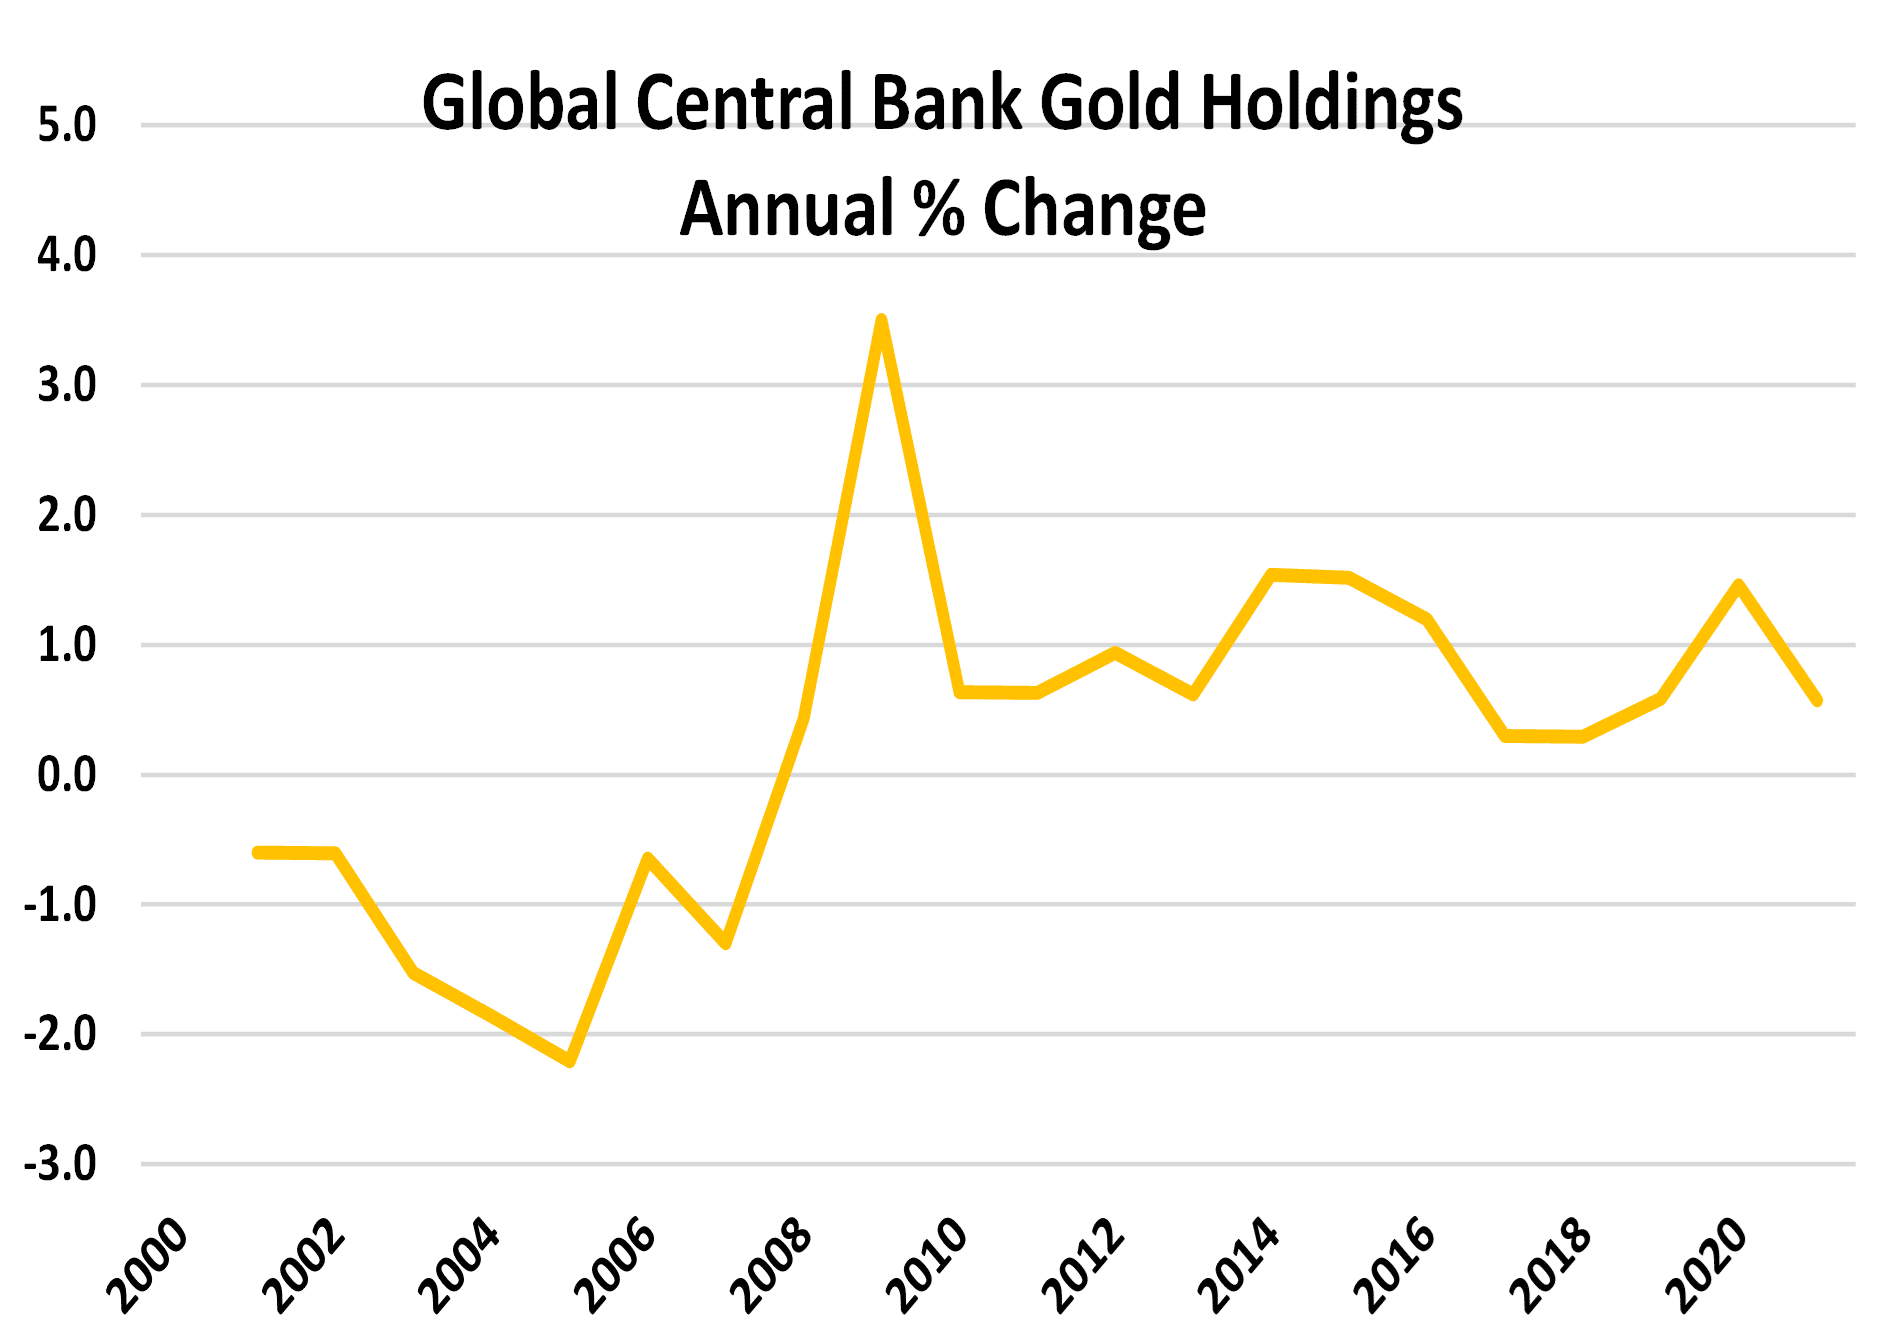 Reservas globales de oro en bancos centrales % variación anual